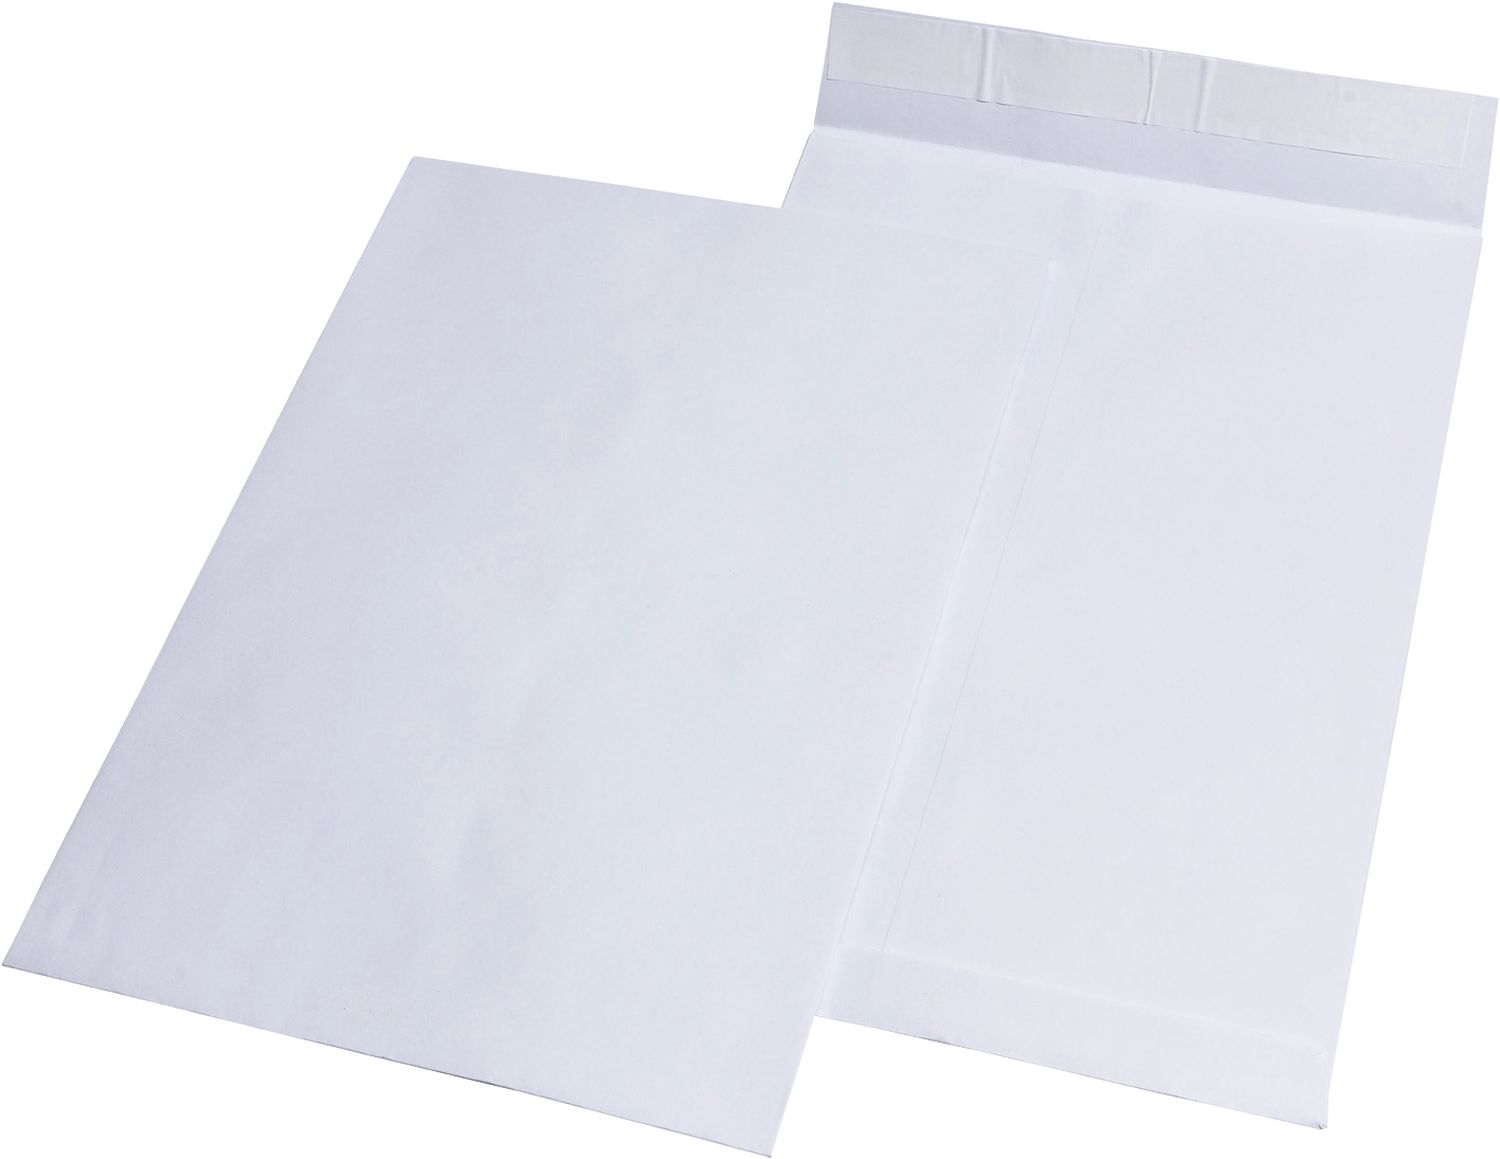 Faltentaschen MAILmedia® 30007364, C4, ohne Fenster, mit 20 mm Falte, 120 g/qm, weiß, 100 Stück